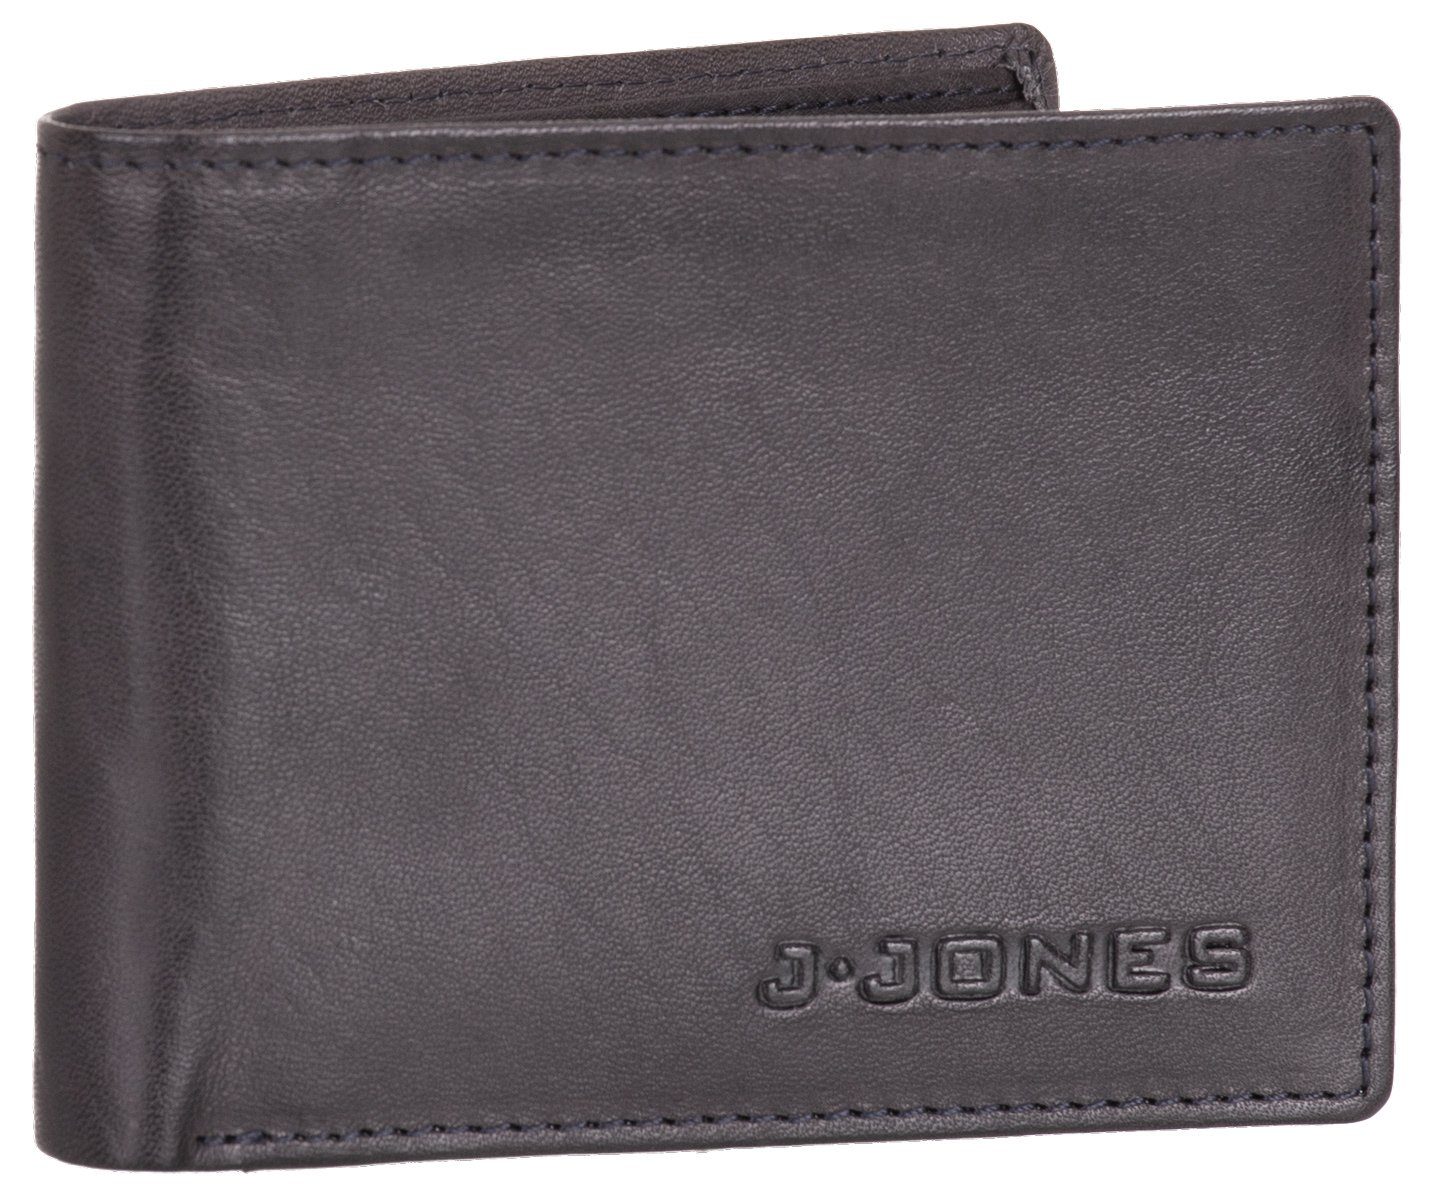 Förderungsantragsteller J.Jones Geldbörse, Geldbörse flach und Echt faltbar Portemonnaie RFID-Schutz anthrazit Münzfach Leder Geldbeutel